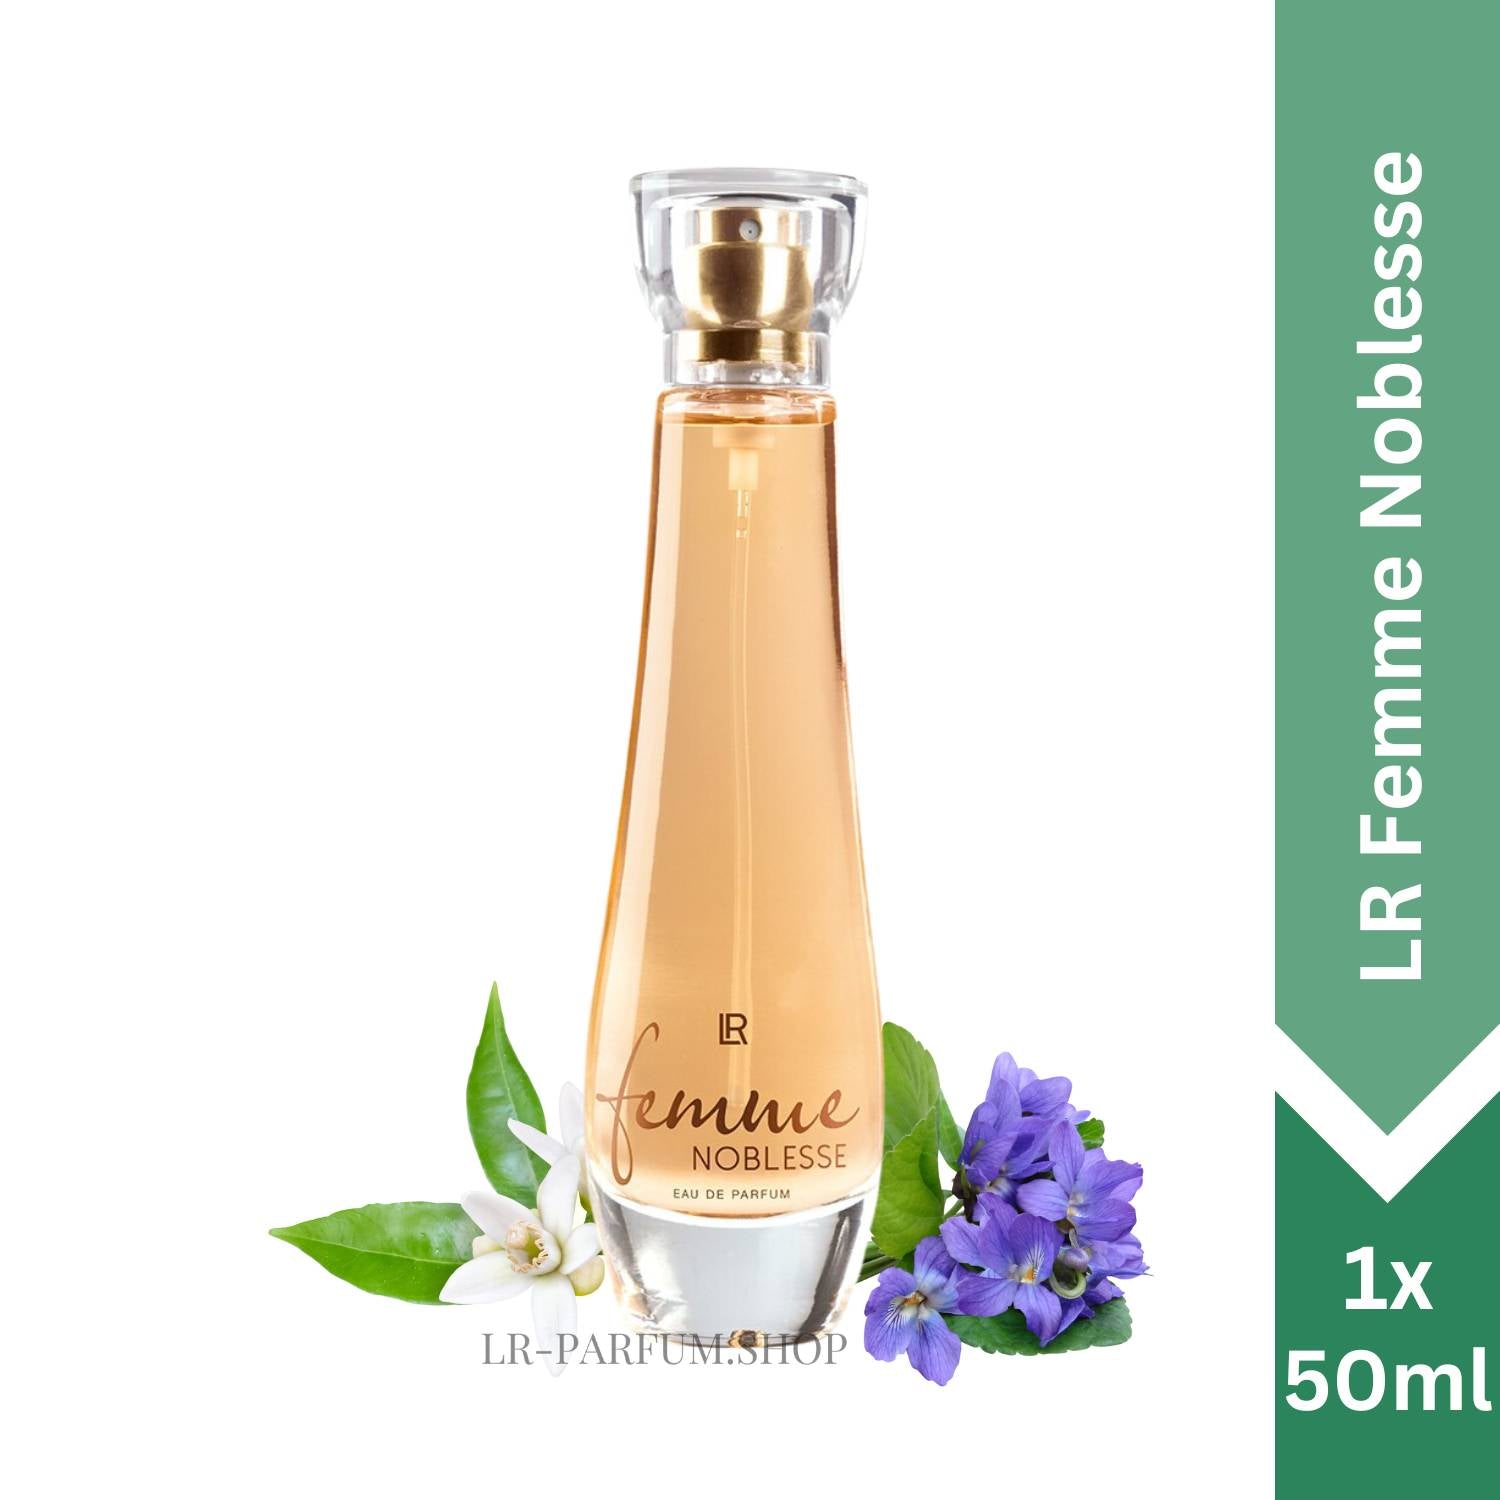 LR Femme Noblesse - Eau de Parfum 50ml - LR-Parfum.shop